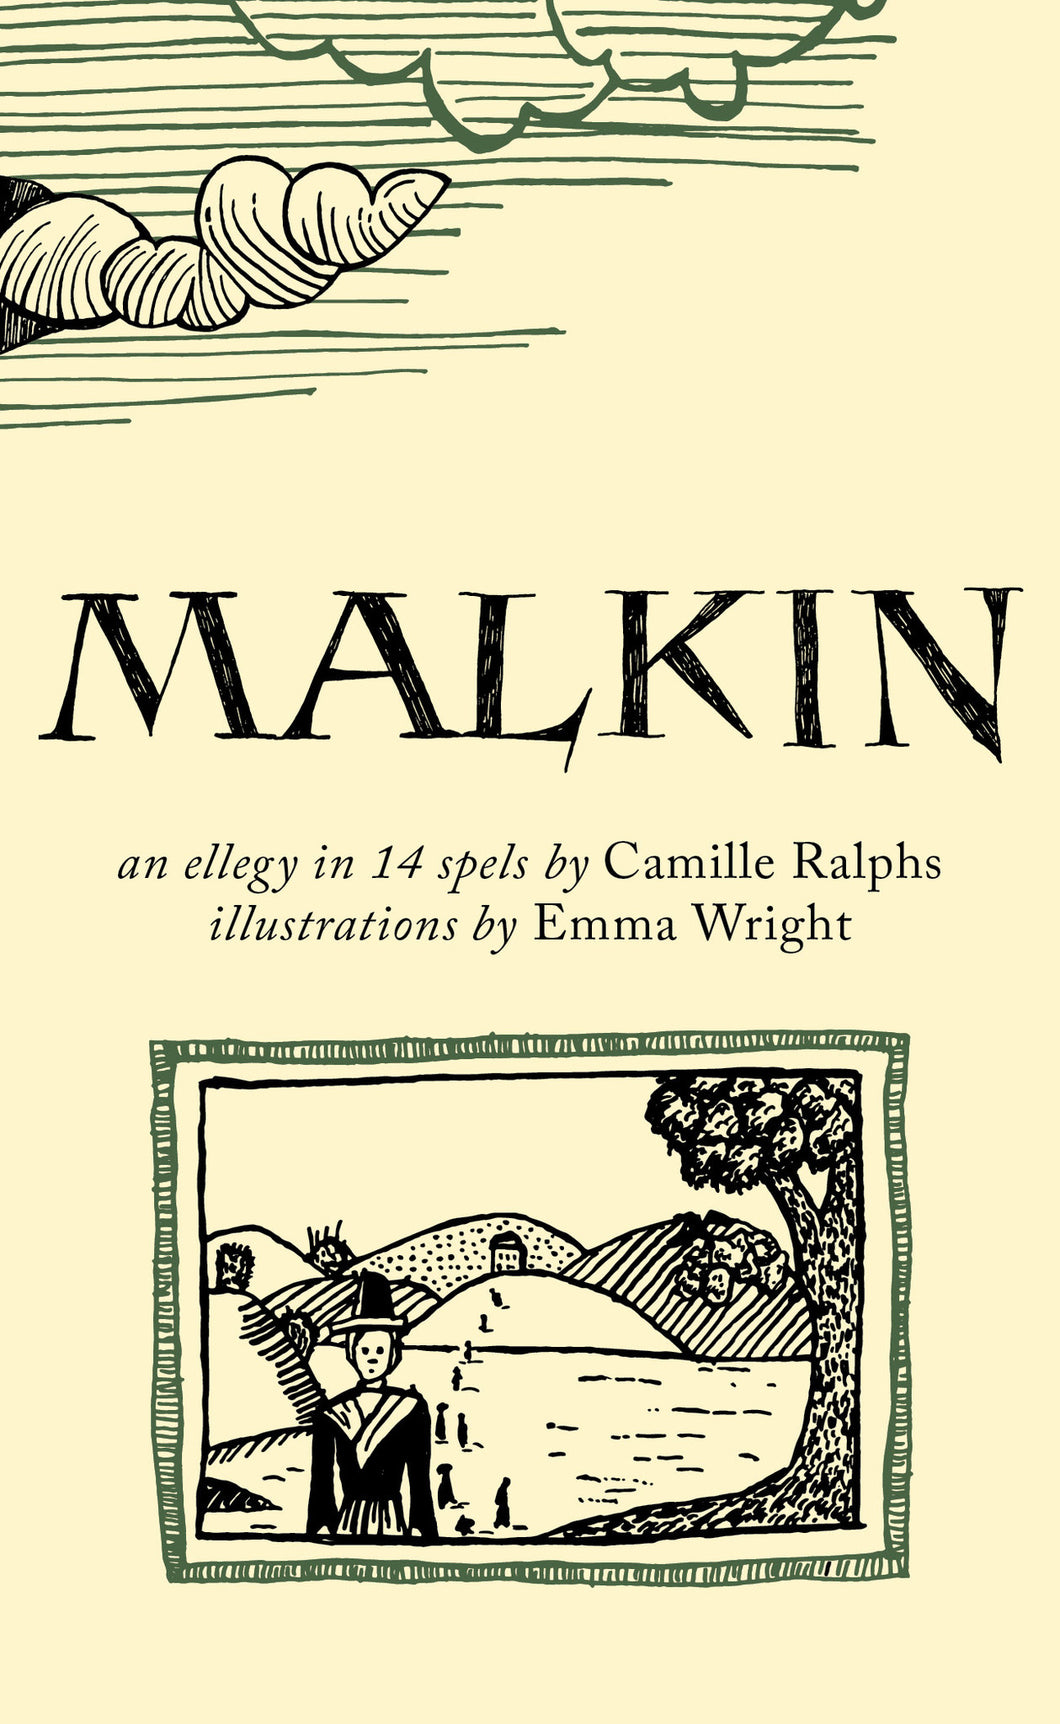 Malkin